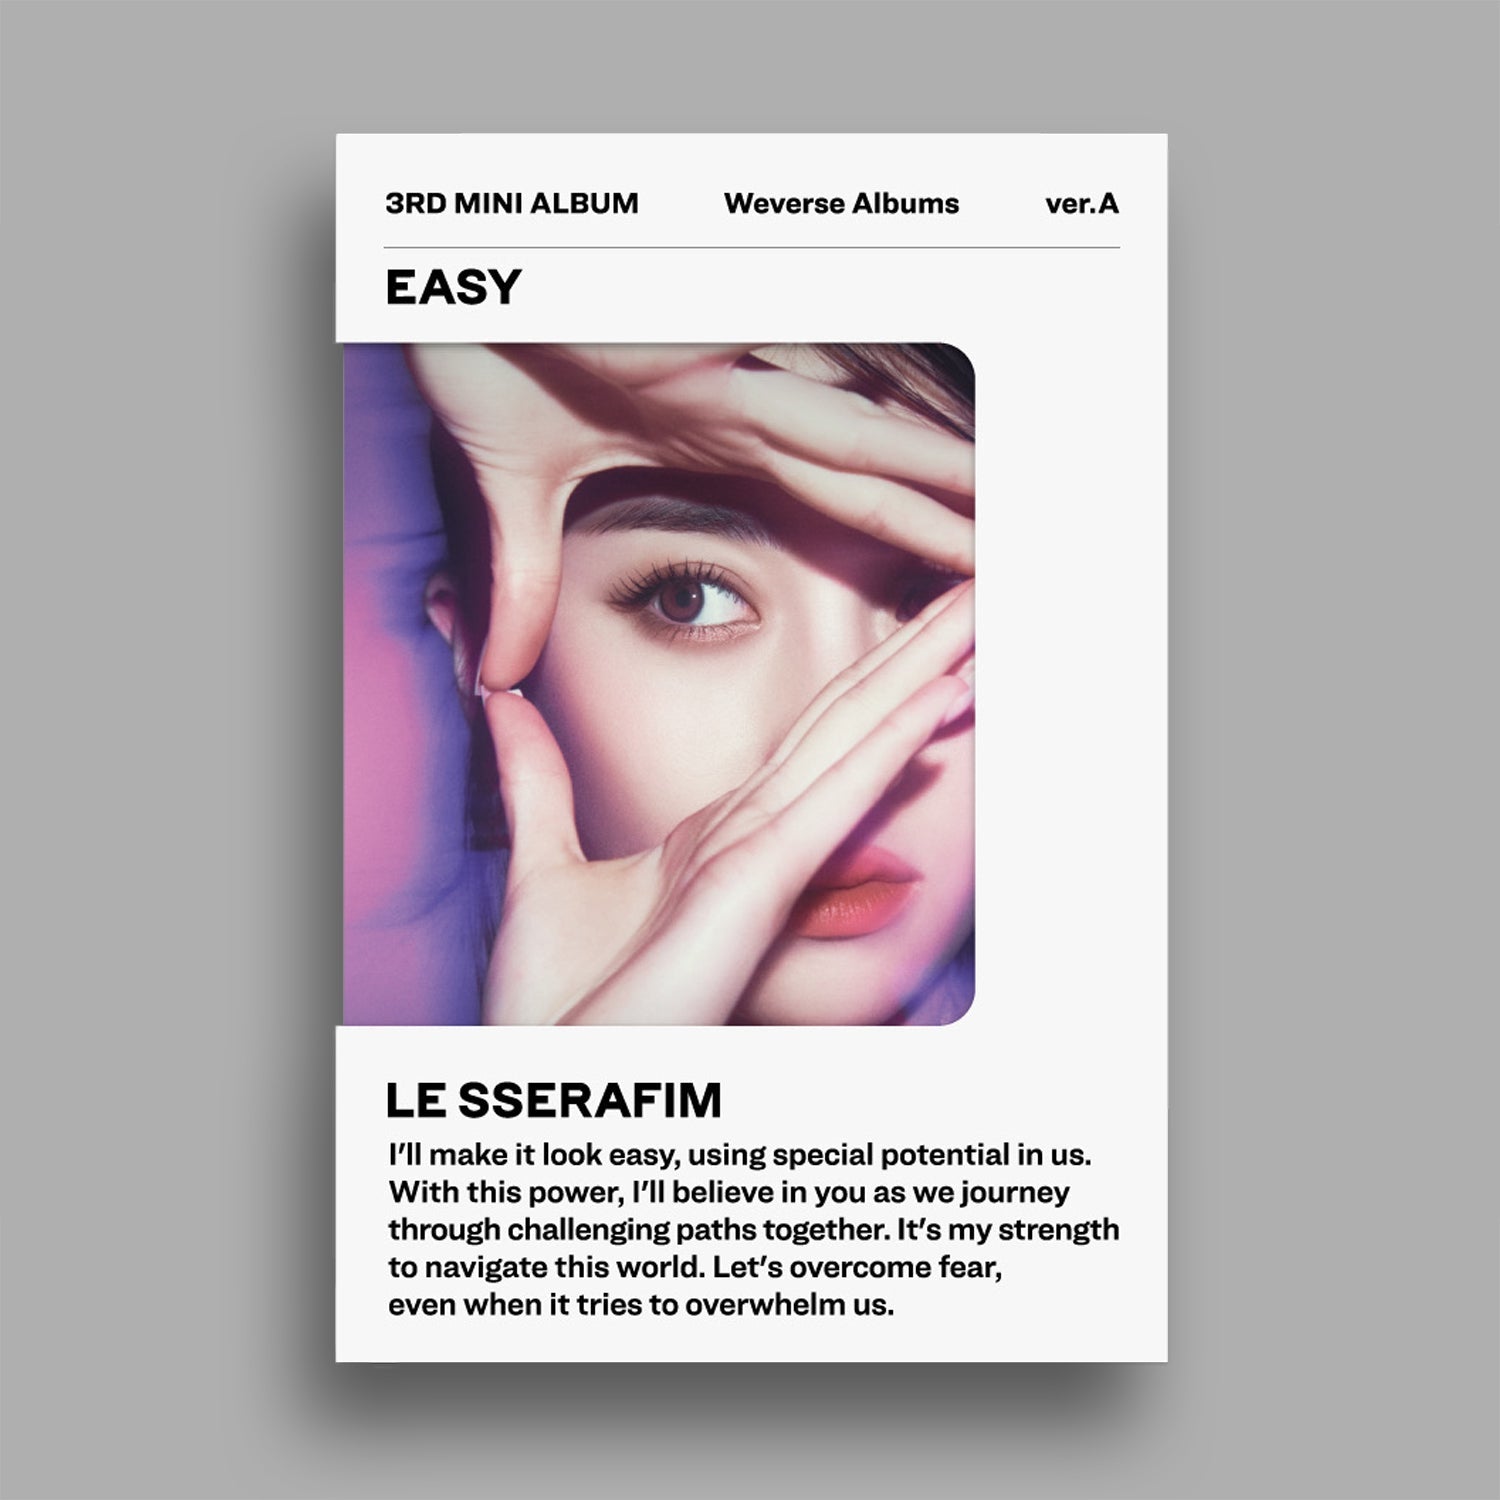 LE SSERAFIM 3RD MINI ALBUM 'EASY' (WEVERSE) A VERSION COVER